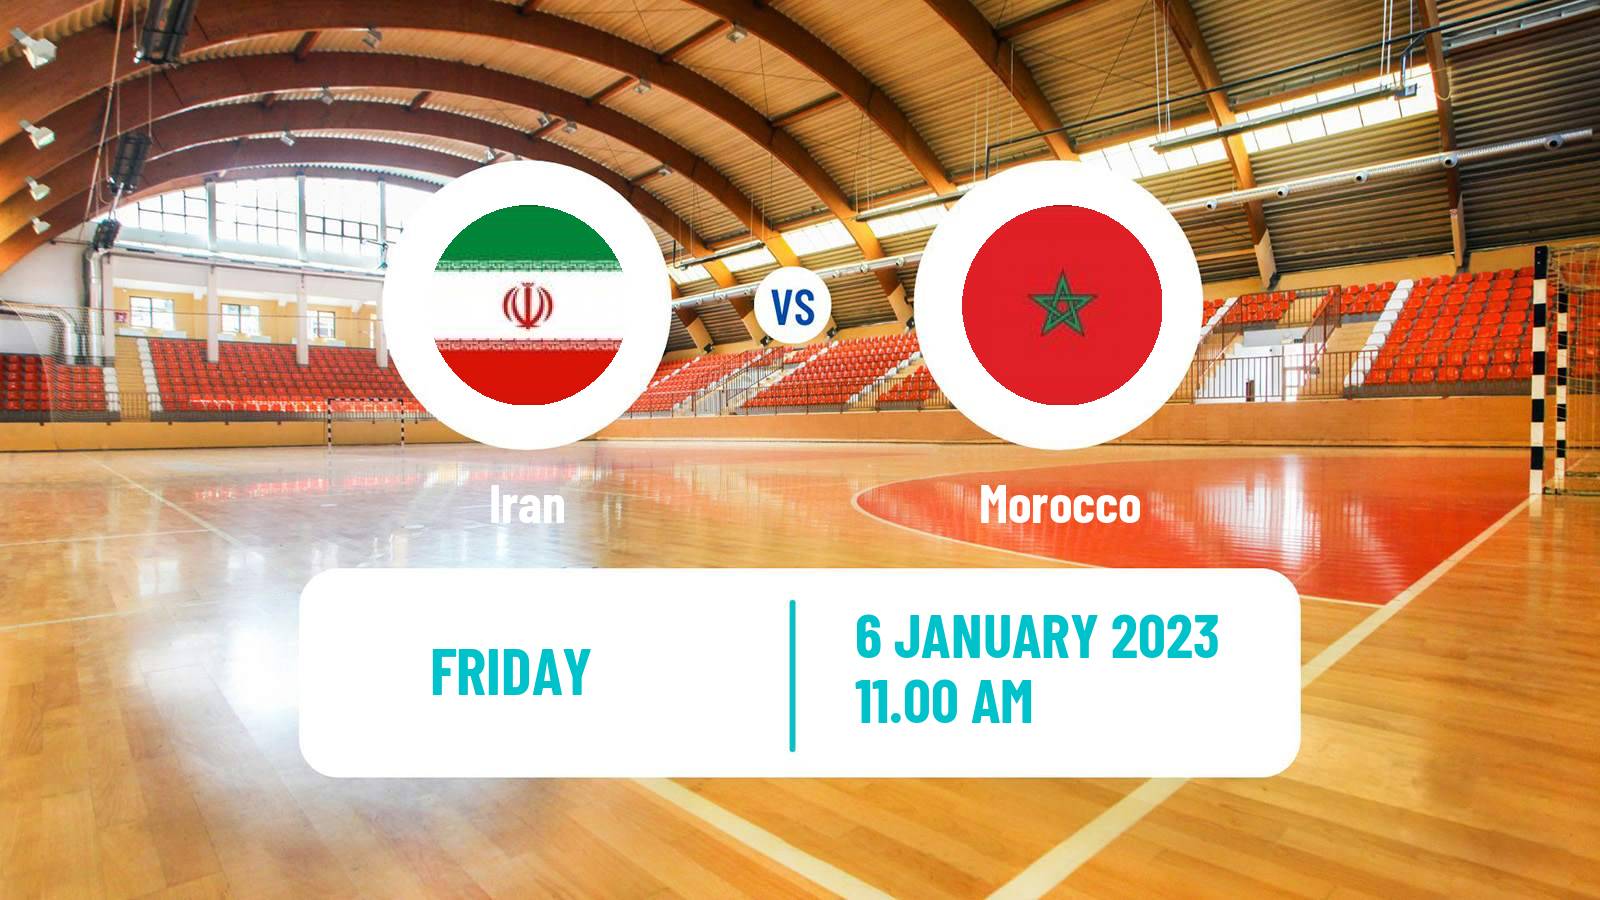 Handball Friendly International Handball Iran - Morocco